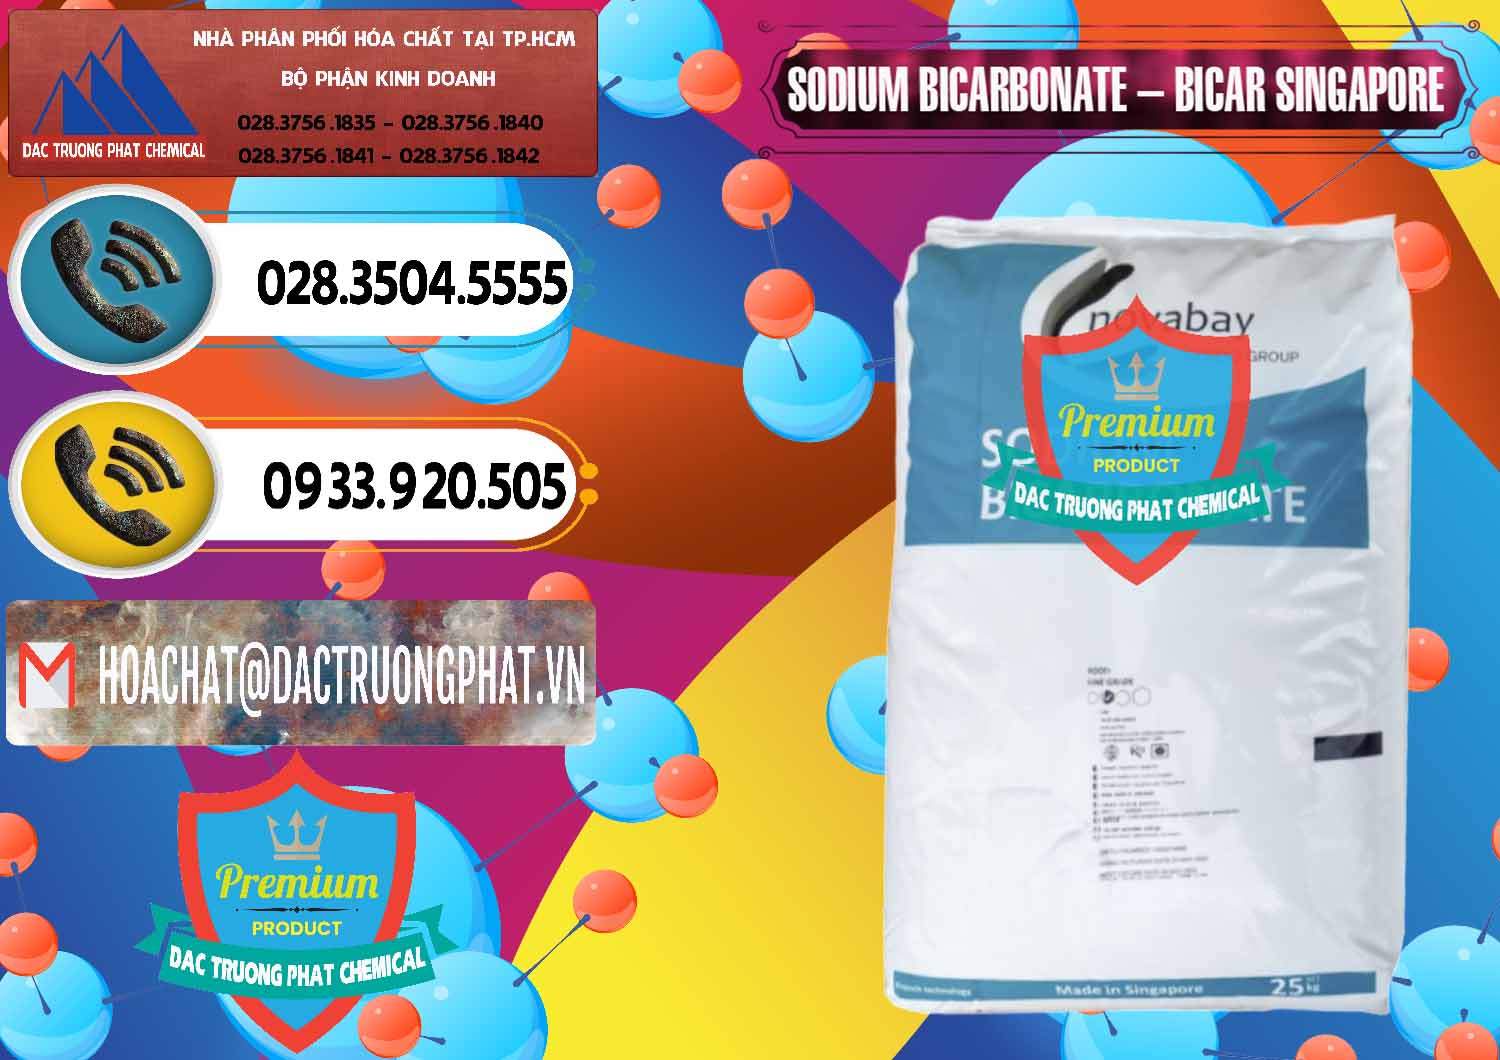 Công ty chuyên bán _ cung ứng Sodium Bicarbonate – Bicar NaHCO3 Singapore - 0411 - Cung cấp ( kinh doanh ) hóa chất tại TP.HCM - hoachatdetnhuom.vn